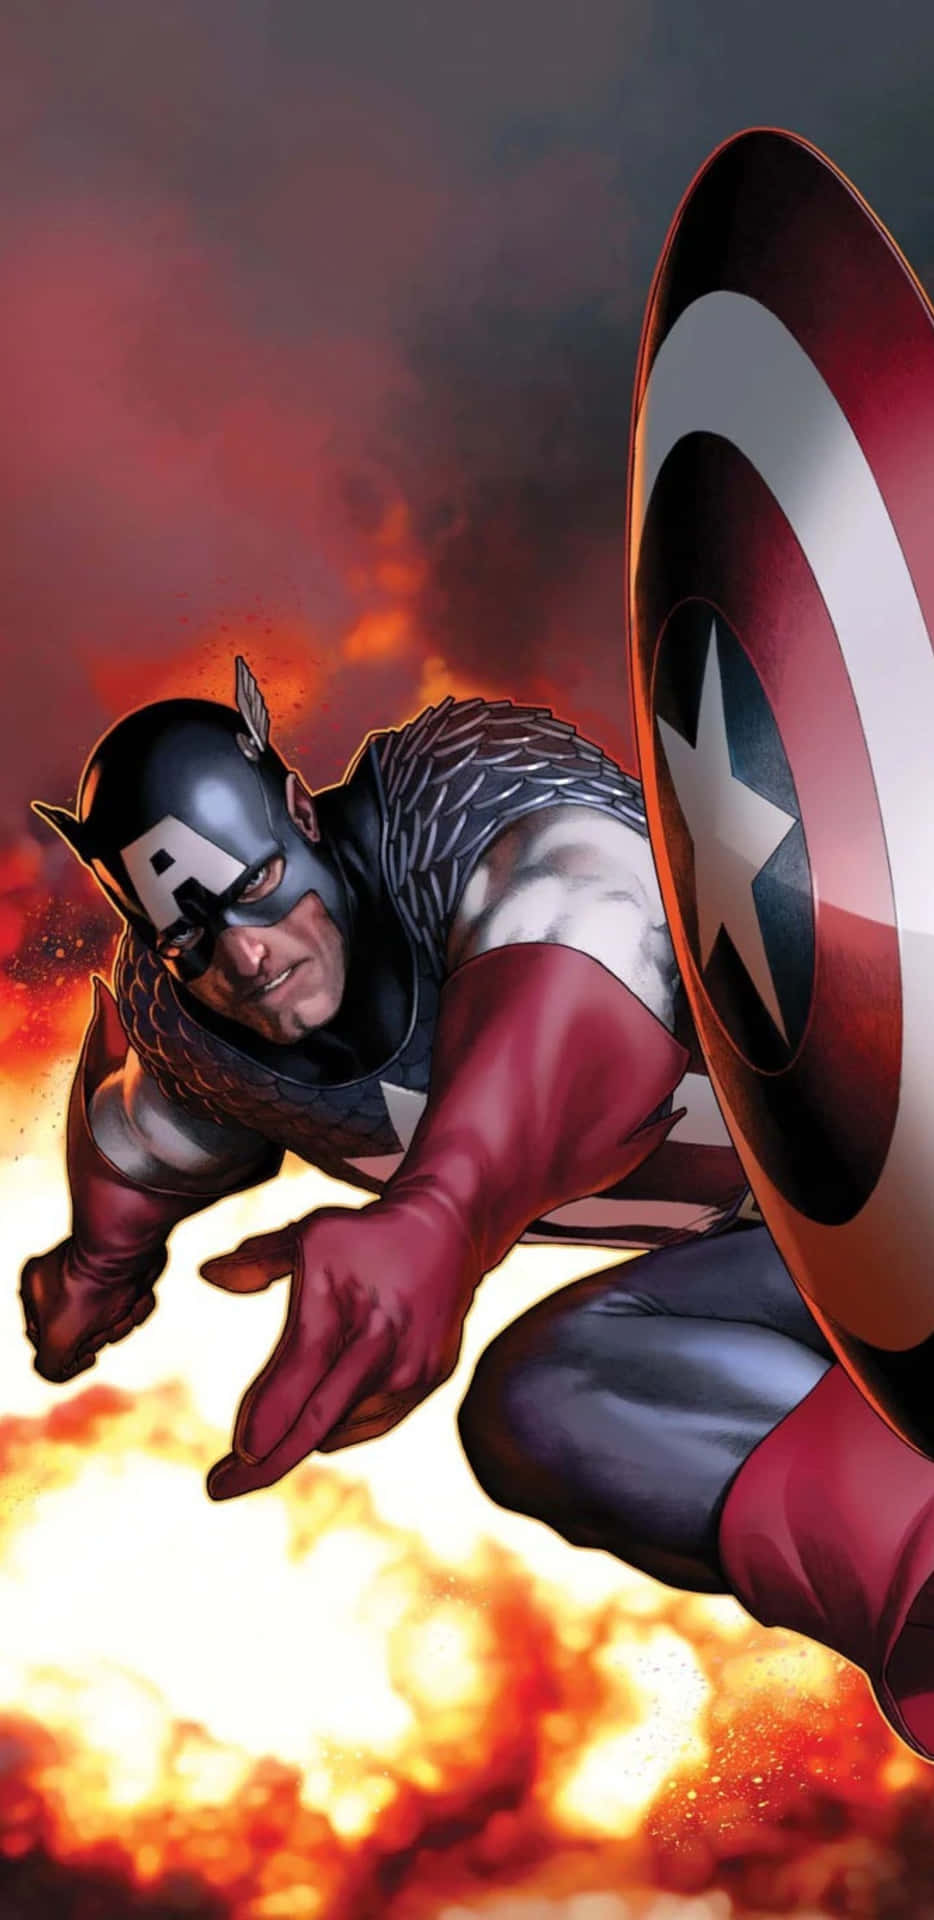 Pixel3xl Bakgrundsbild Med Captain America Från Serietidningen.